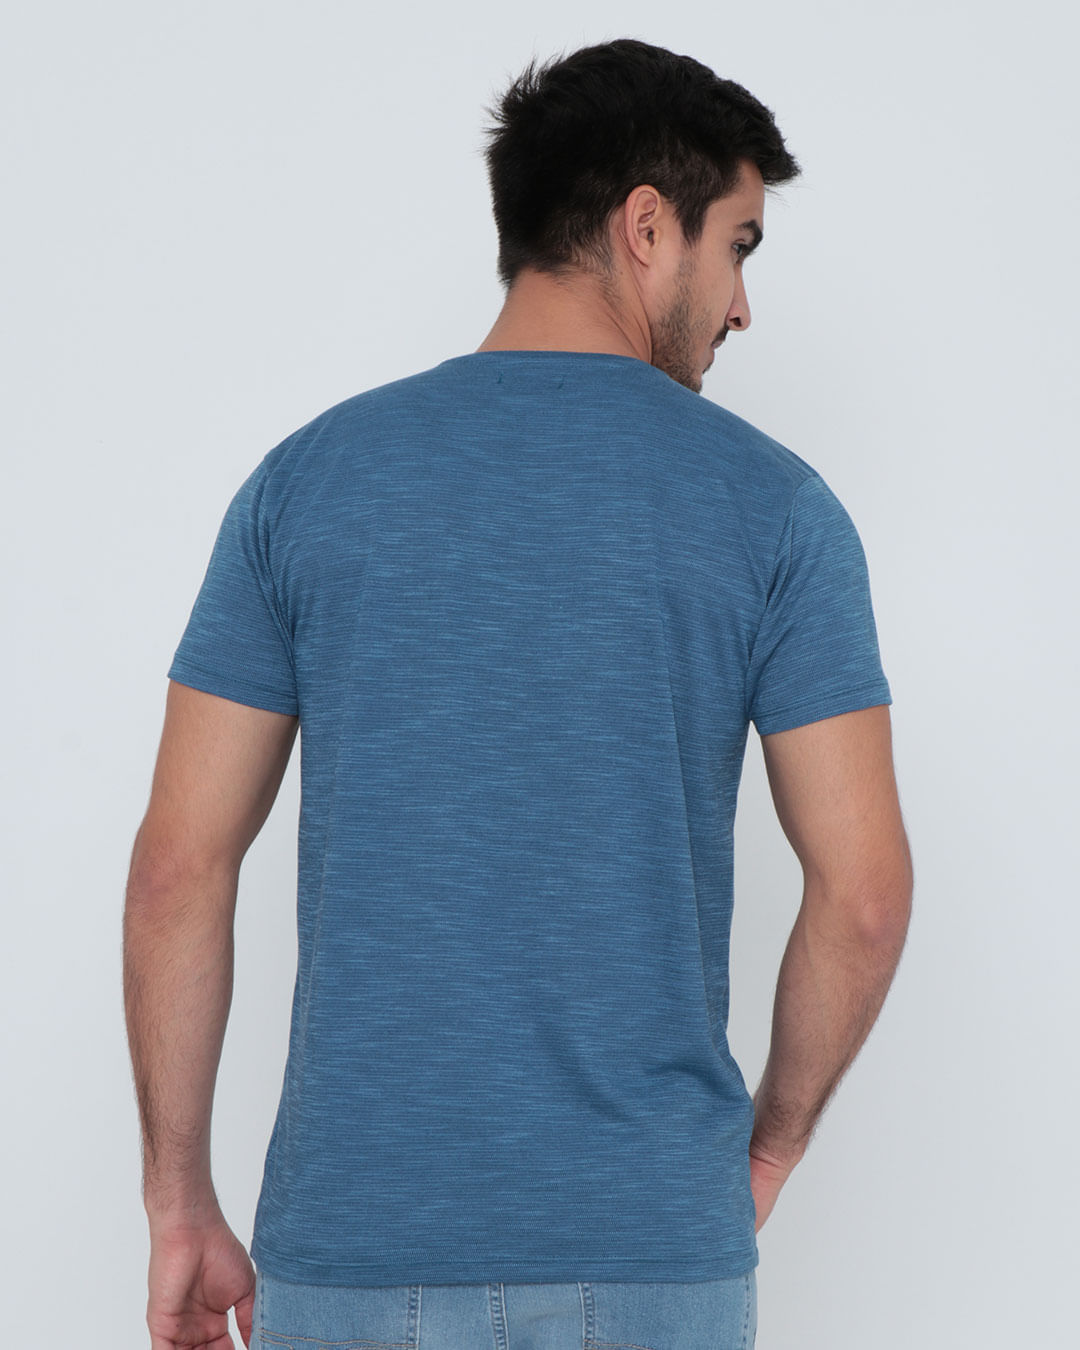 Camiseta-9366-Bordado-Pgg---Azul-Escuro